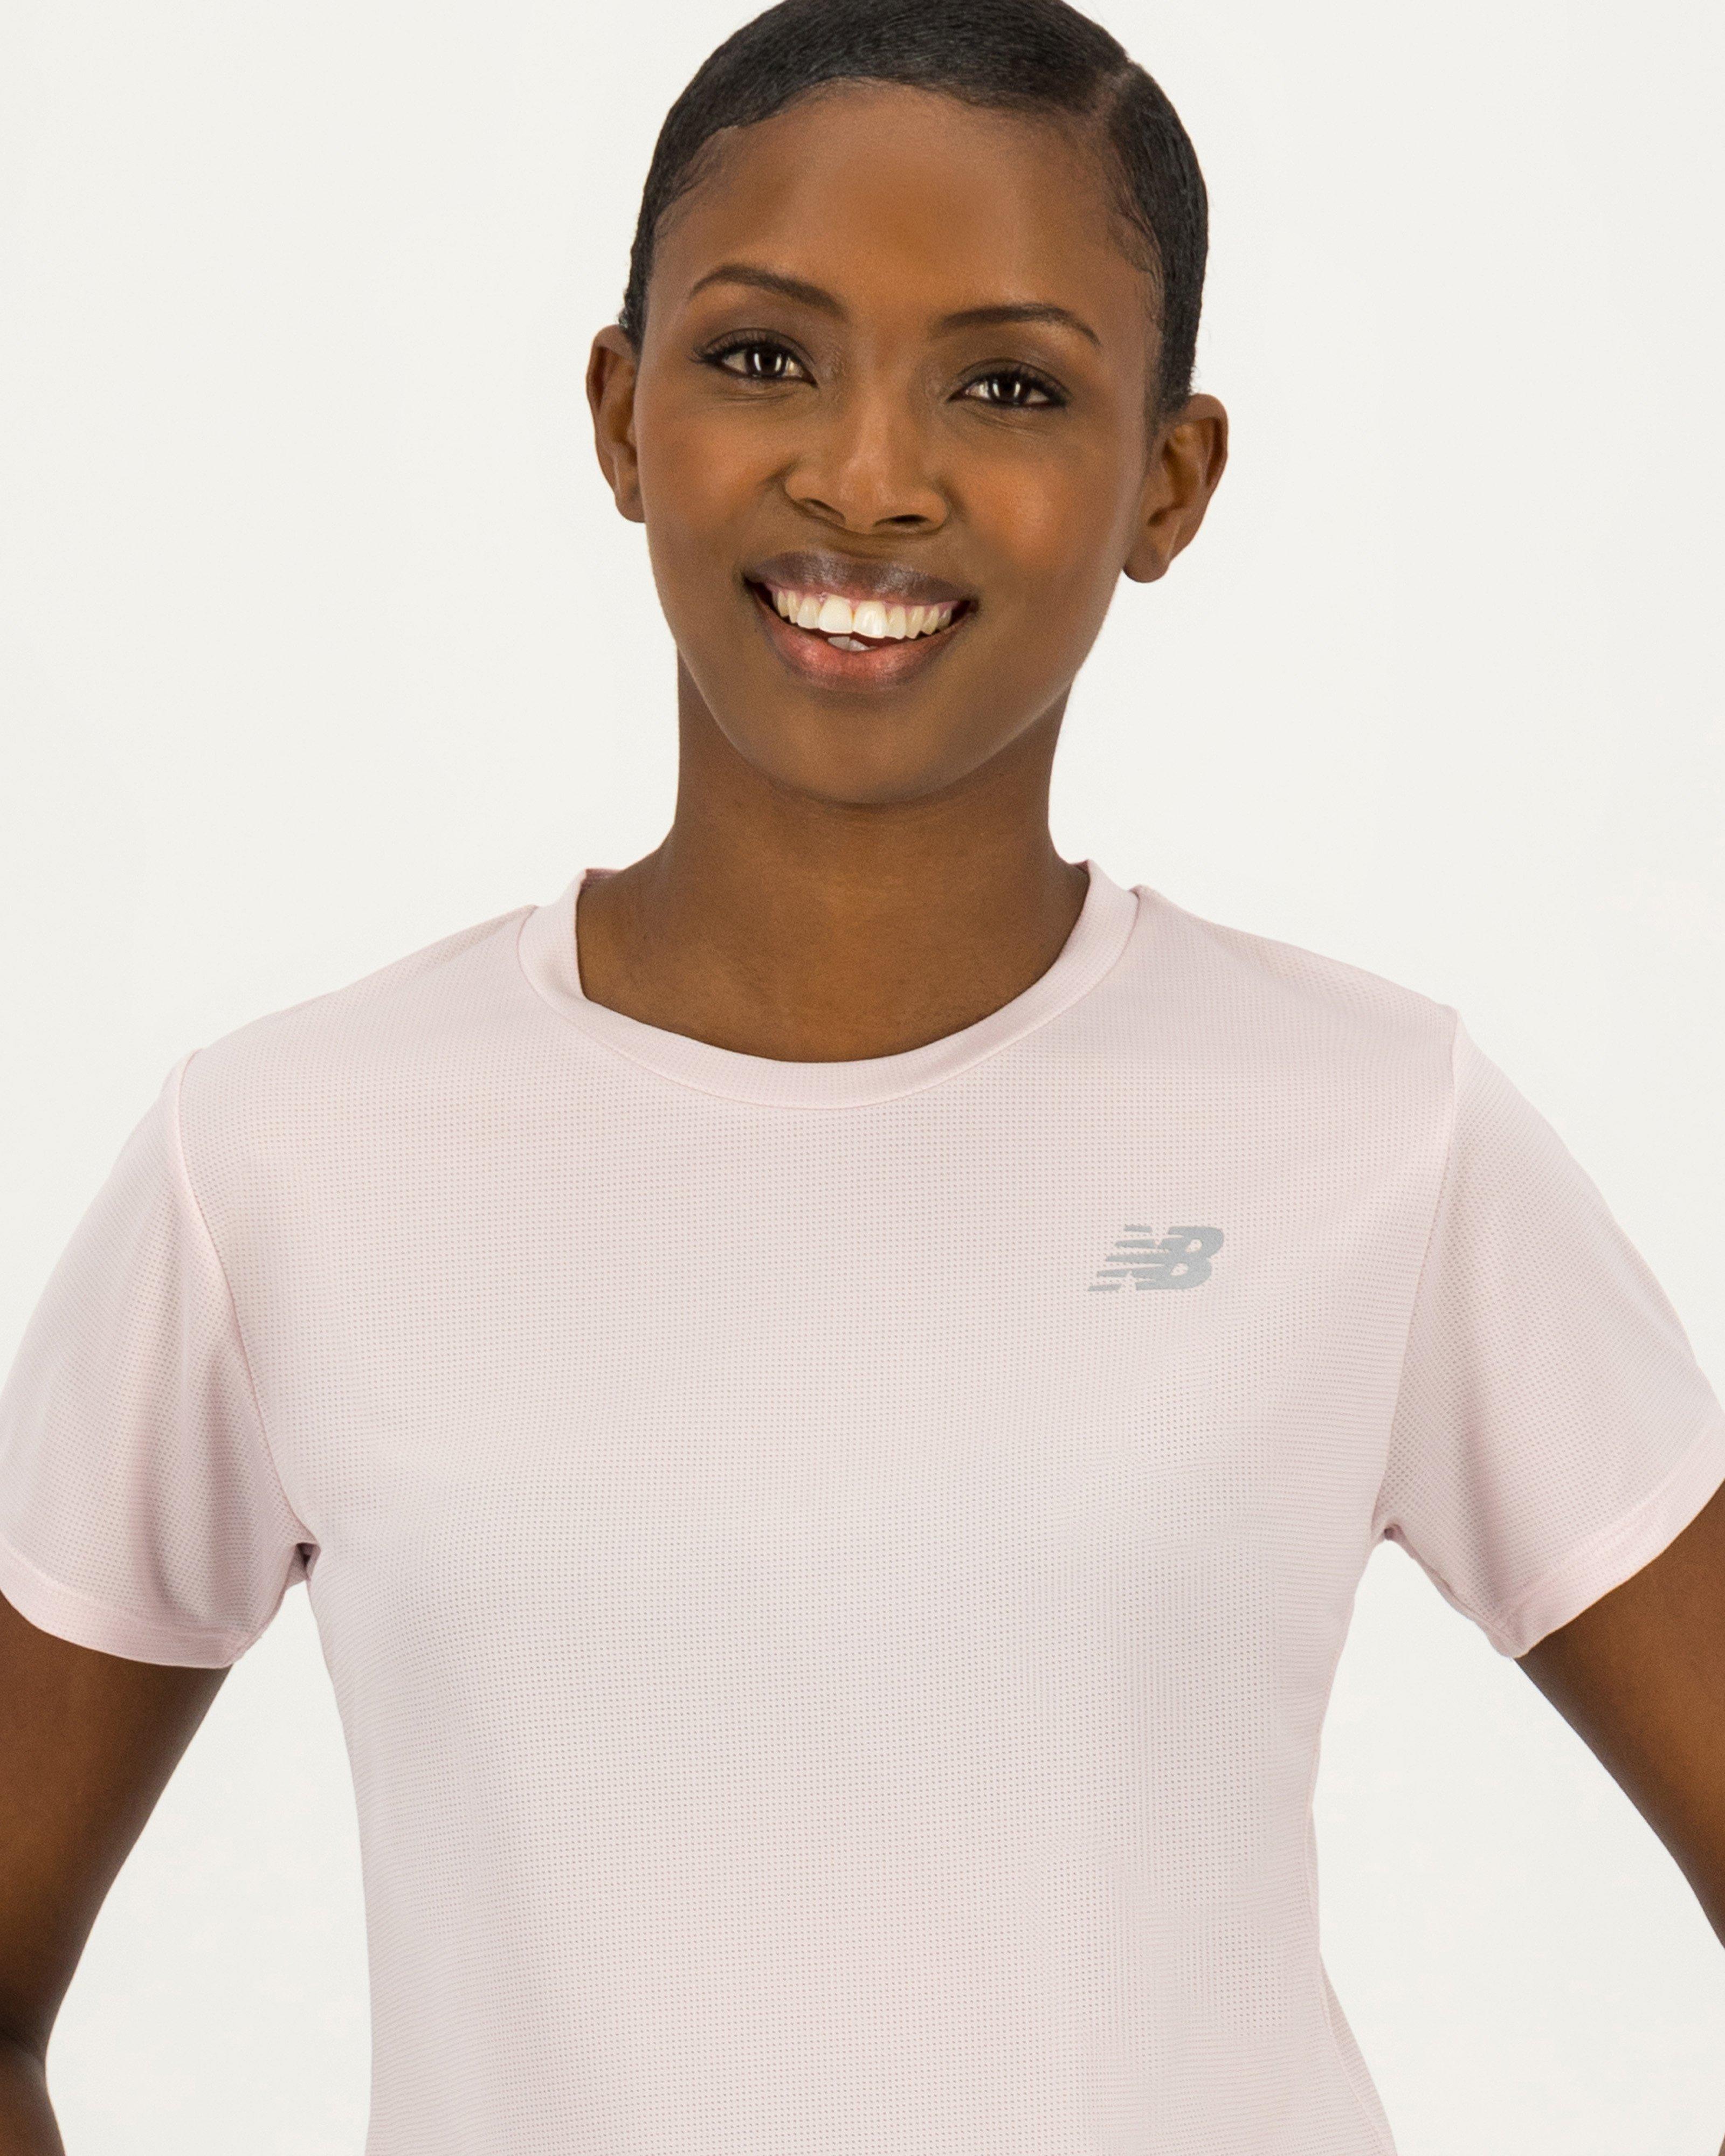 New Balance Women's Accelerate T-Shirt